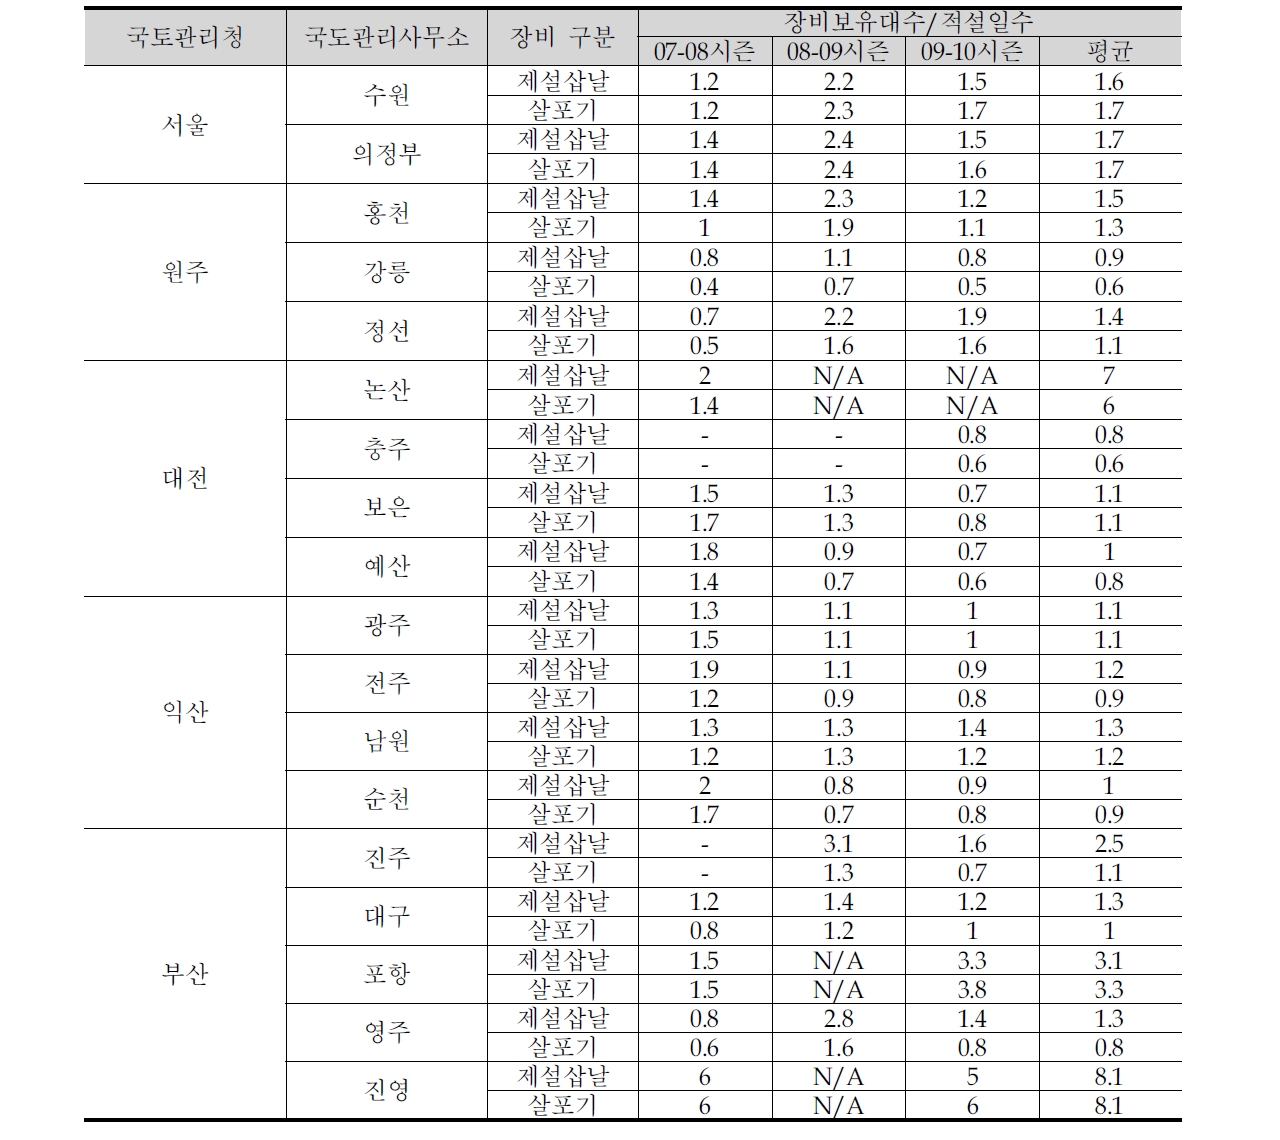 국도관리사무소의 시즌별 장비보유대수/적설일수 비교